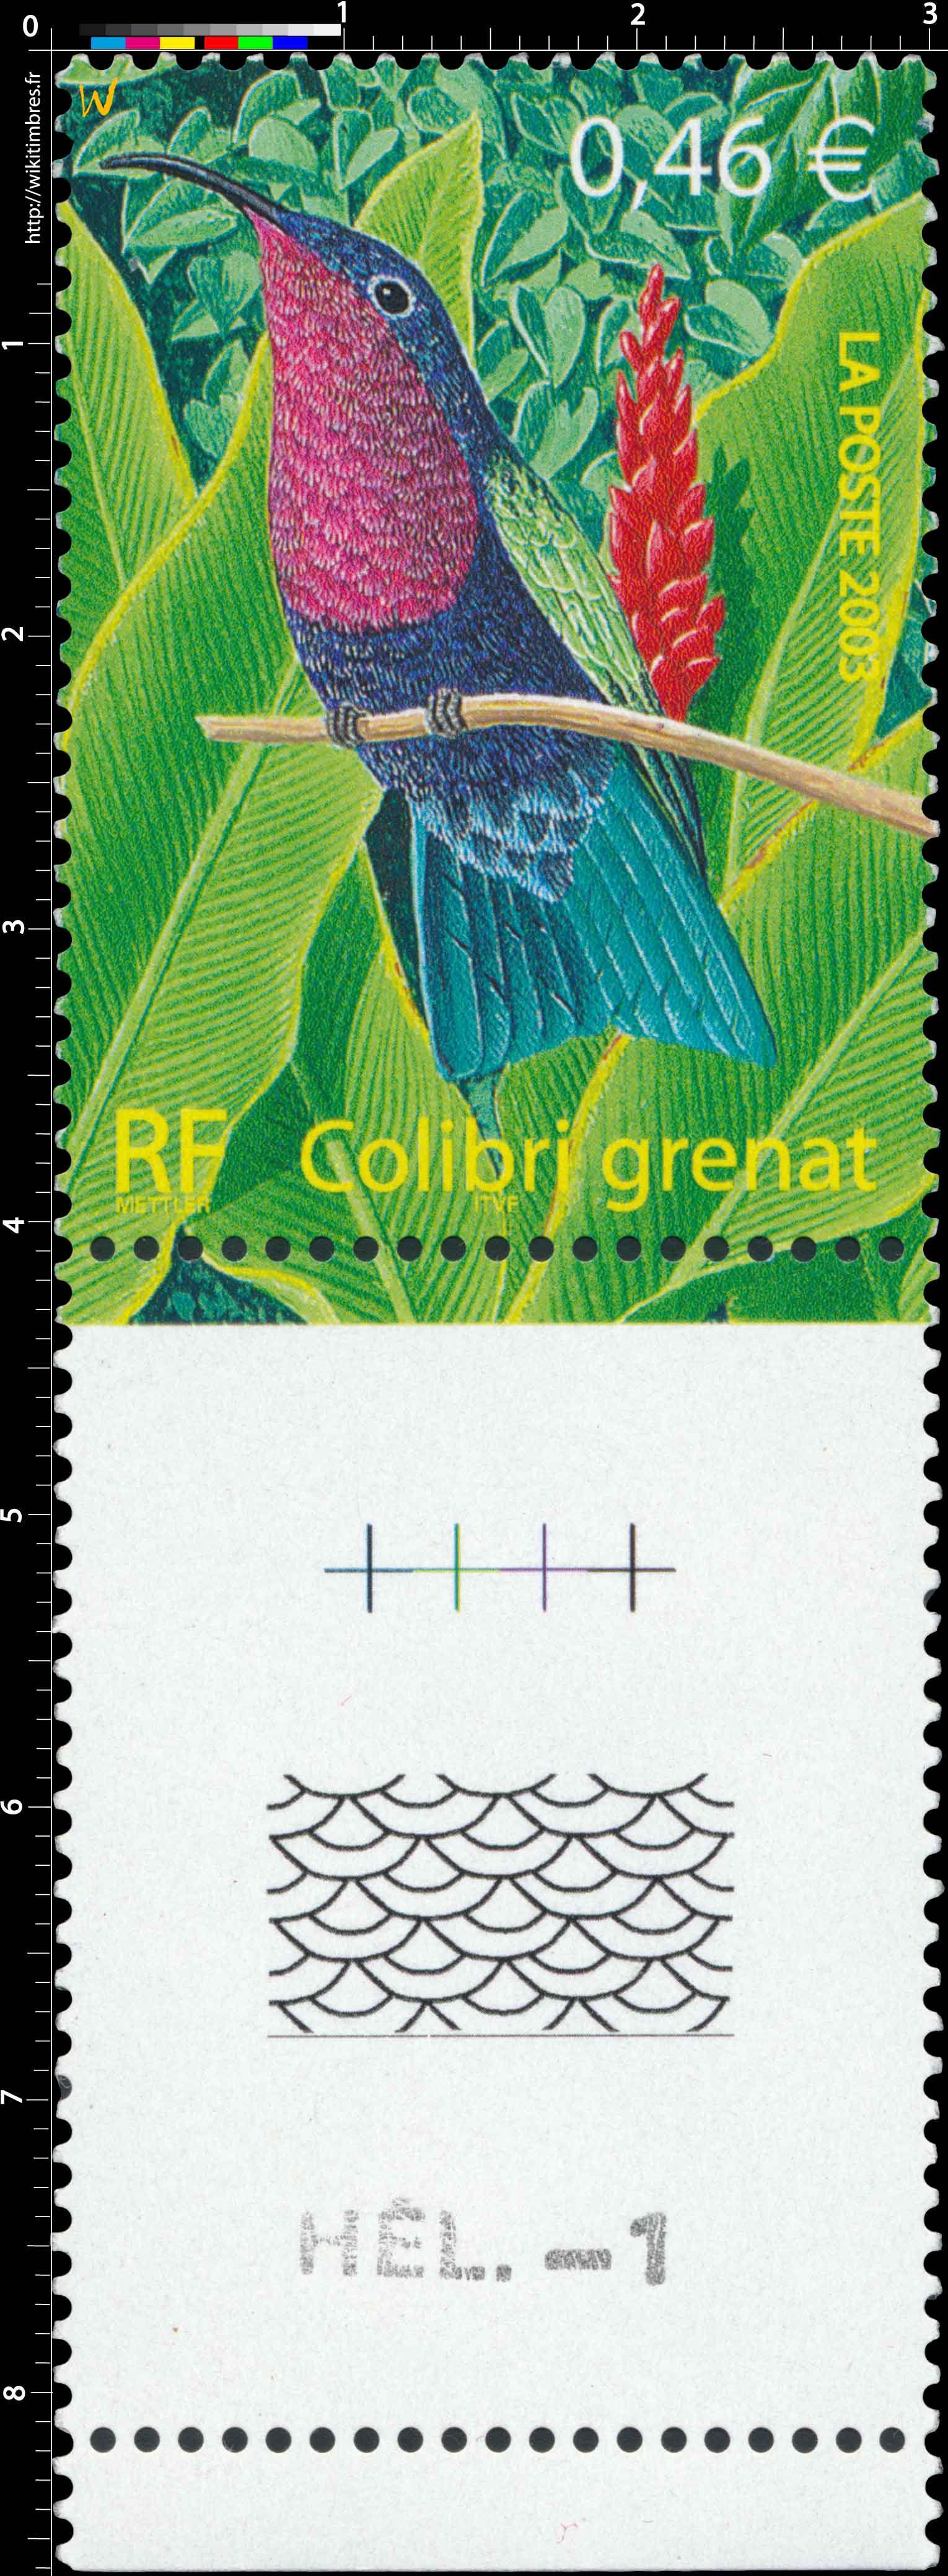 2003 Colibri grenat